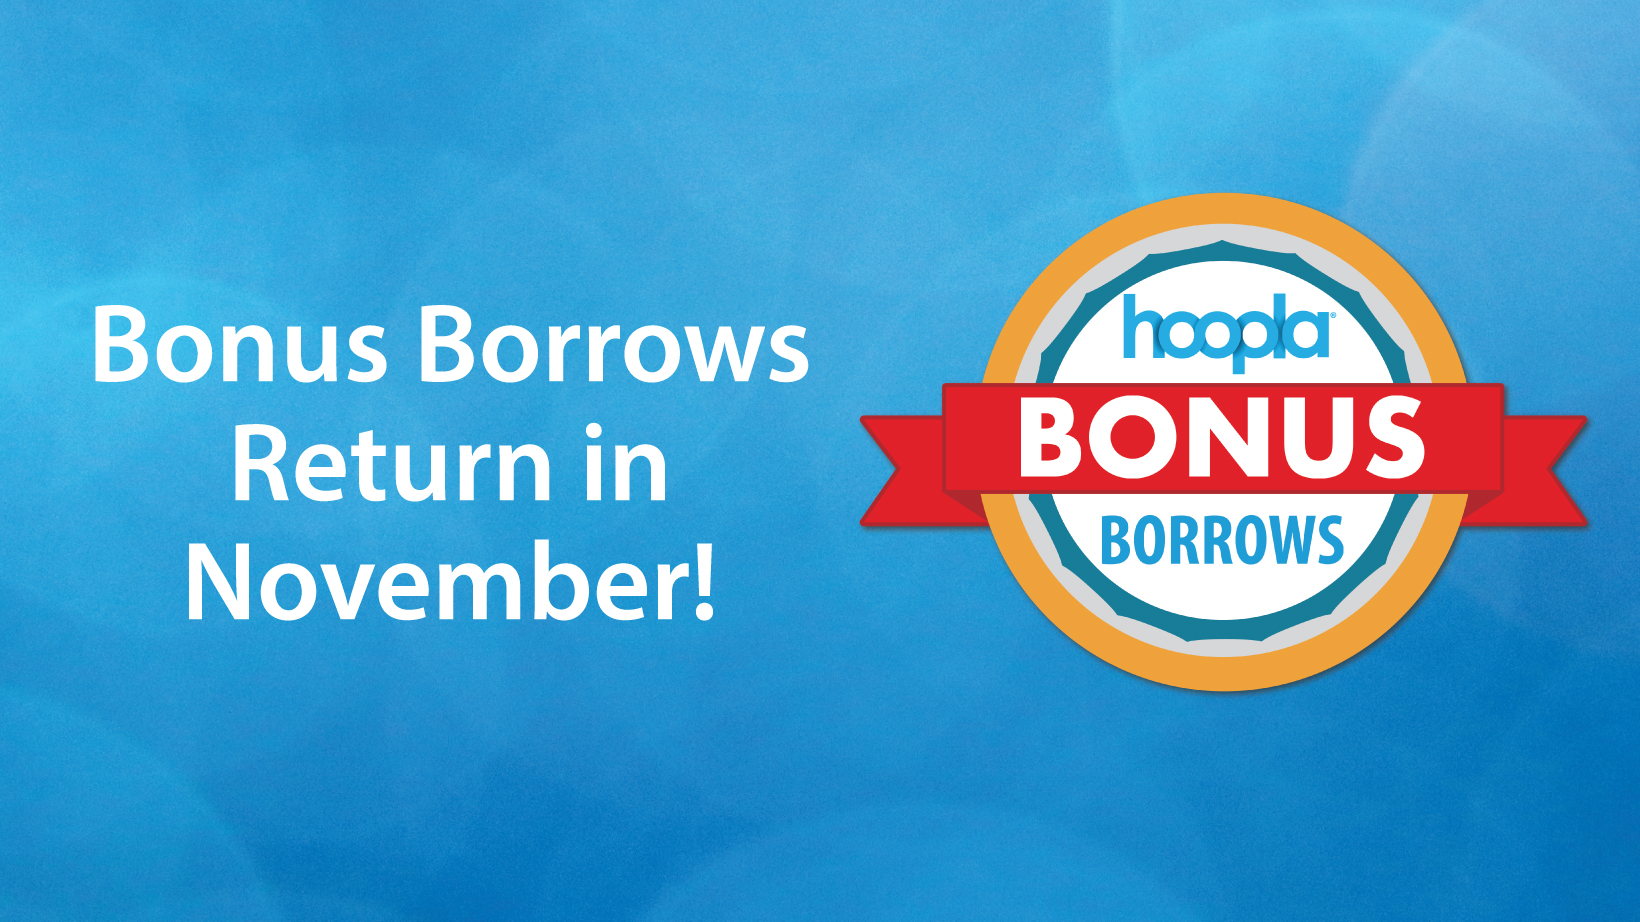 Bonus Borrows Return in November